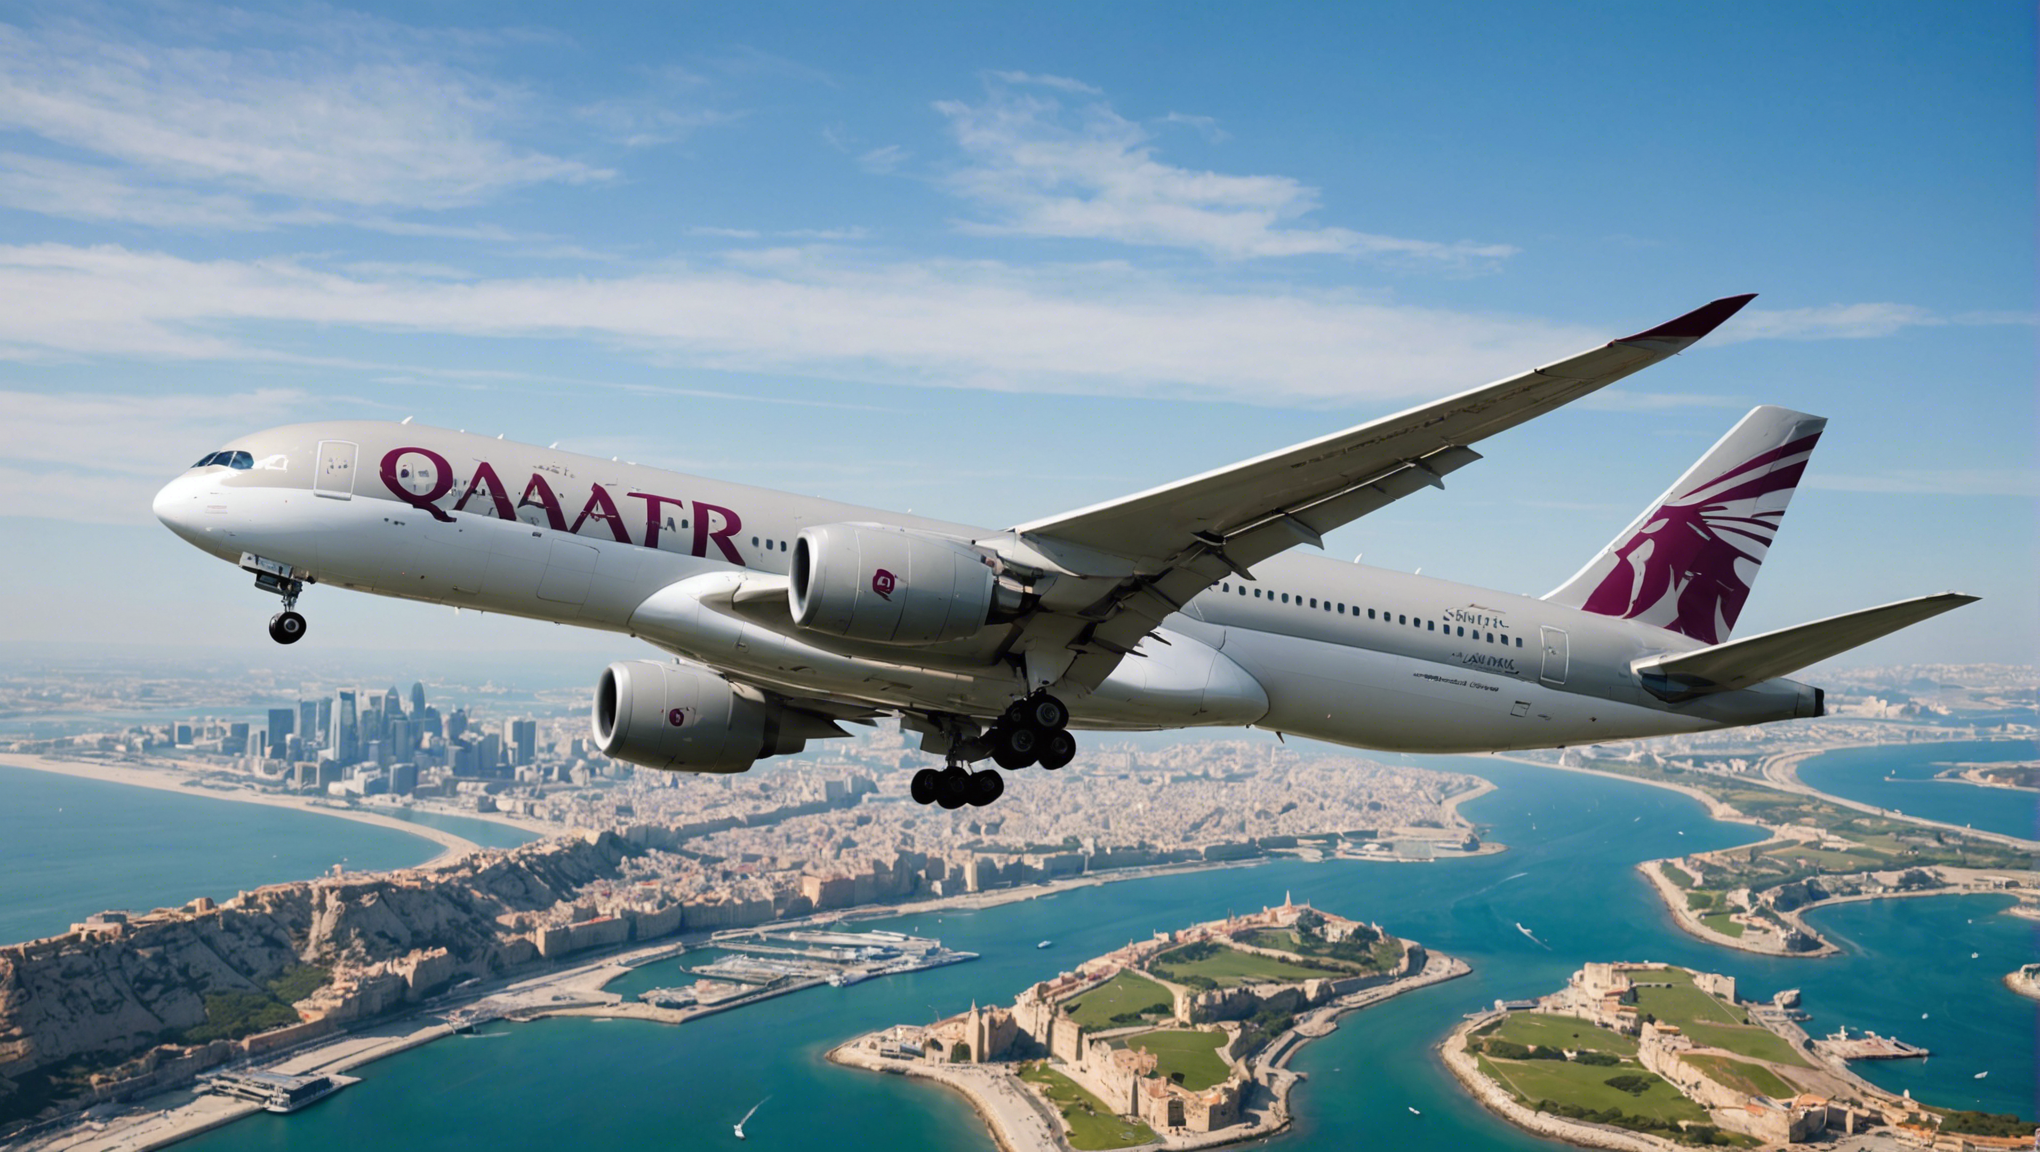 découvrez la nouvelle liaison directe entre doha et lisbonne offerte par qatar airways et profitez de plus d'options de voyage pour les passagers.